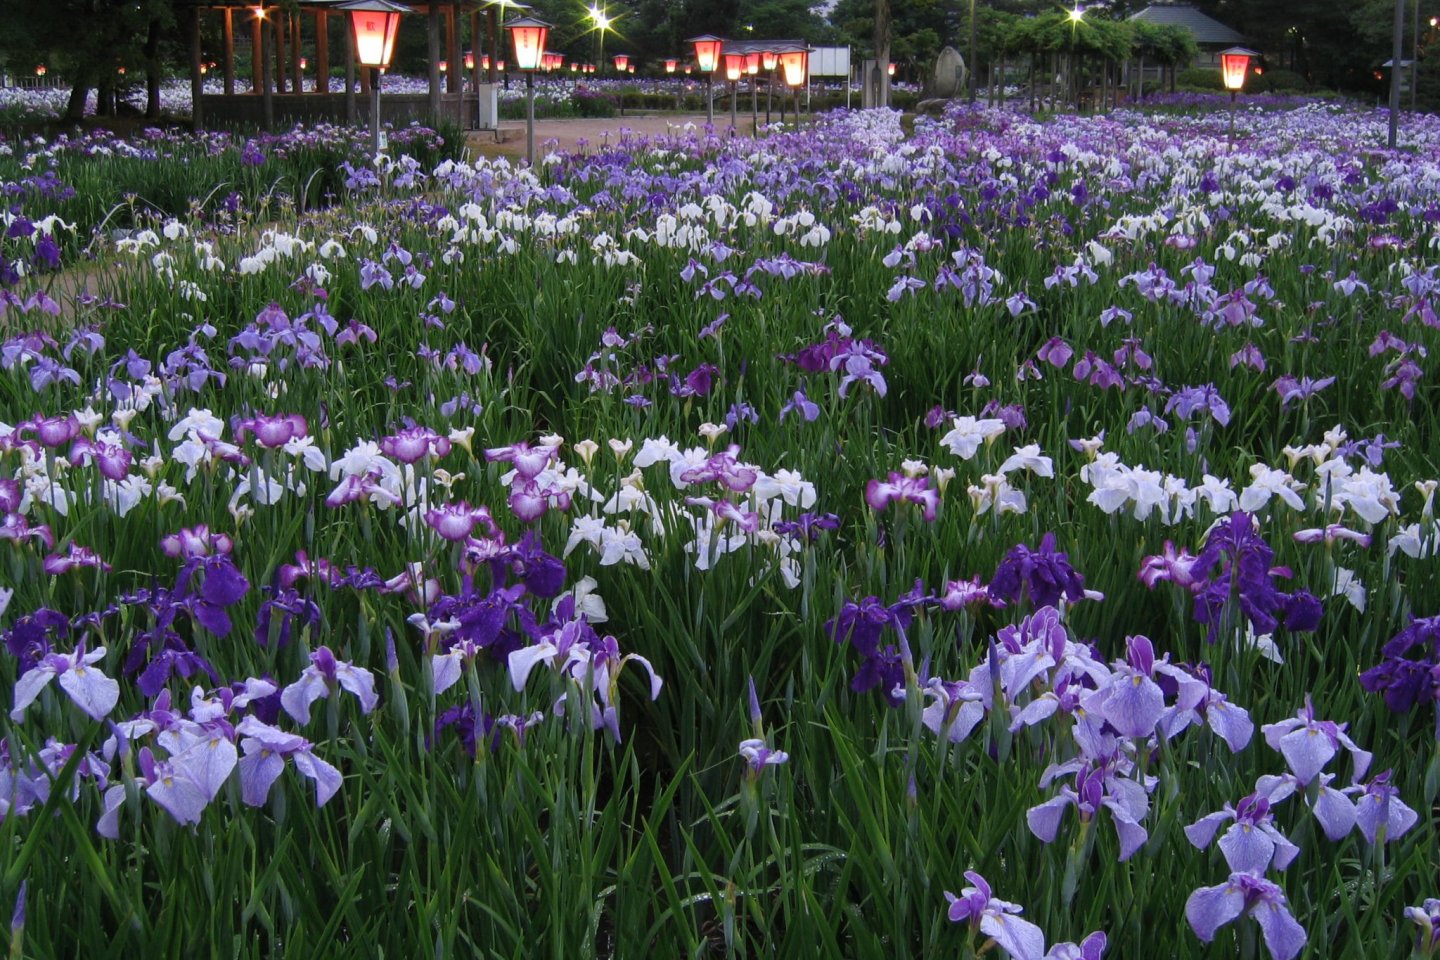 Beautiful irises in bloom at Nagai Ayame Park